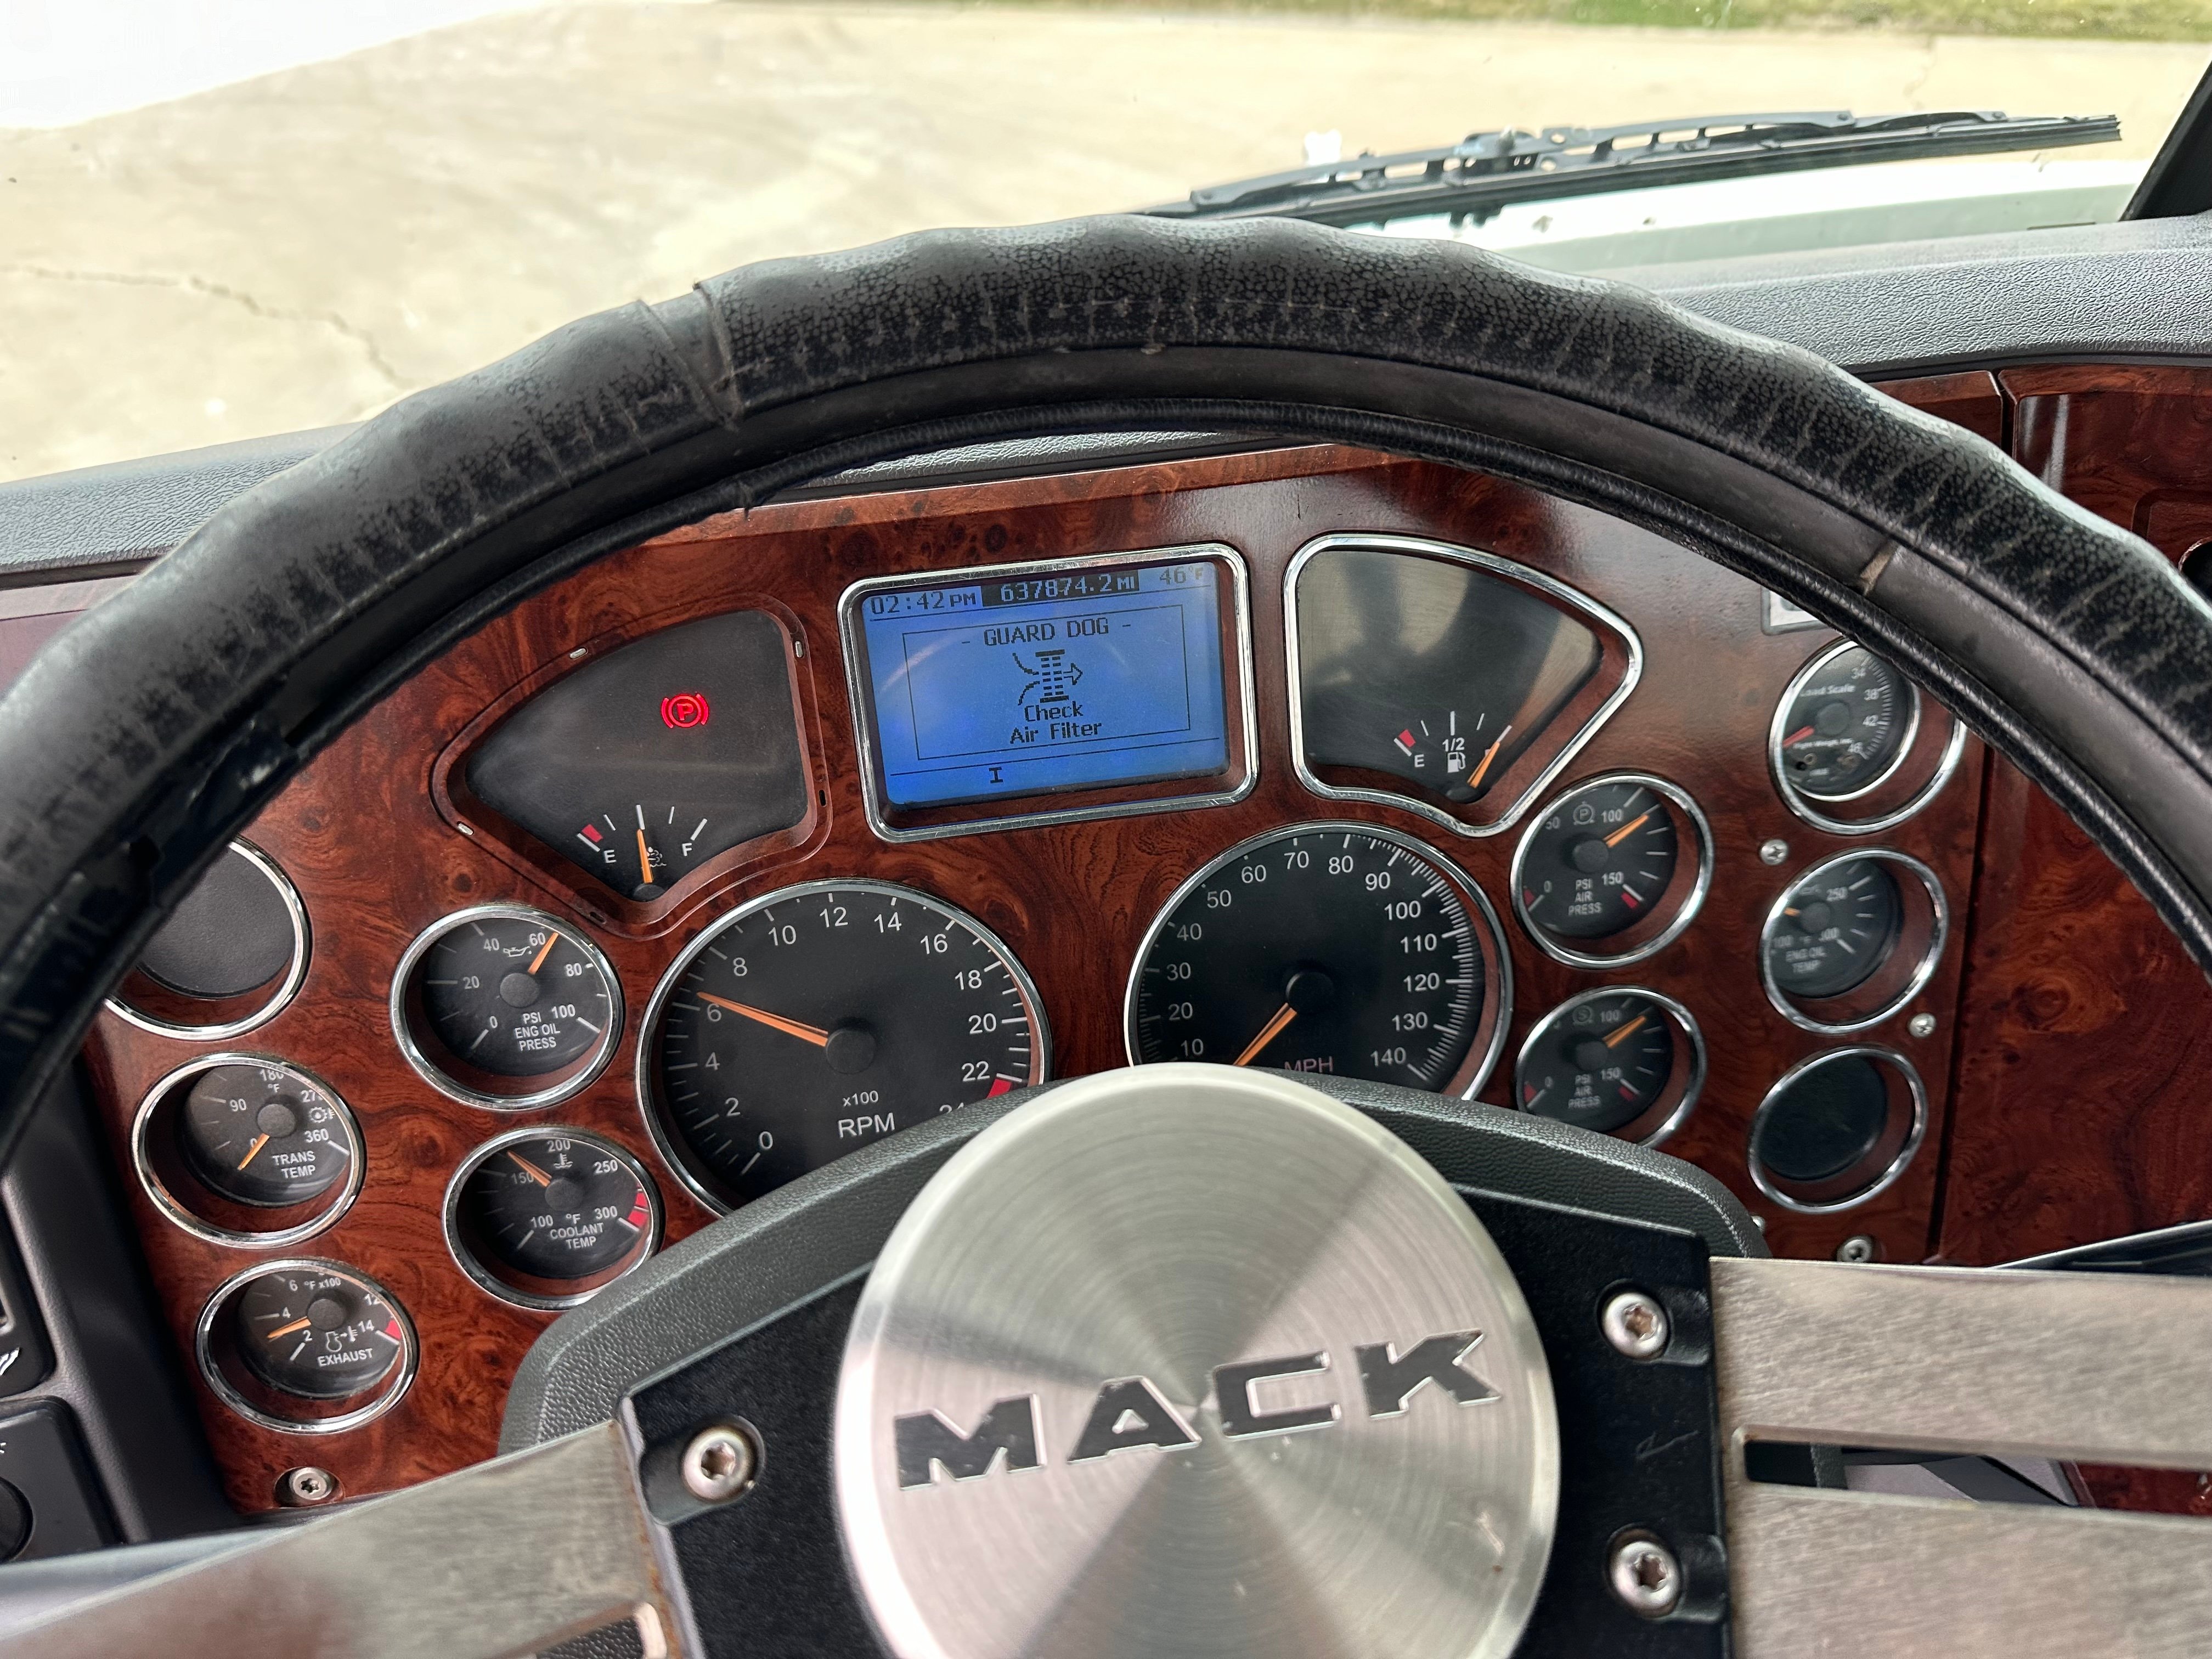 2012 Mack CXU 613